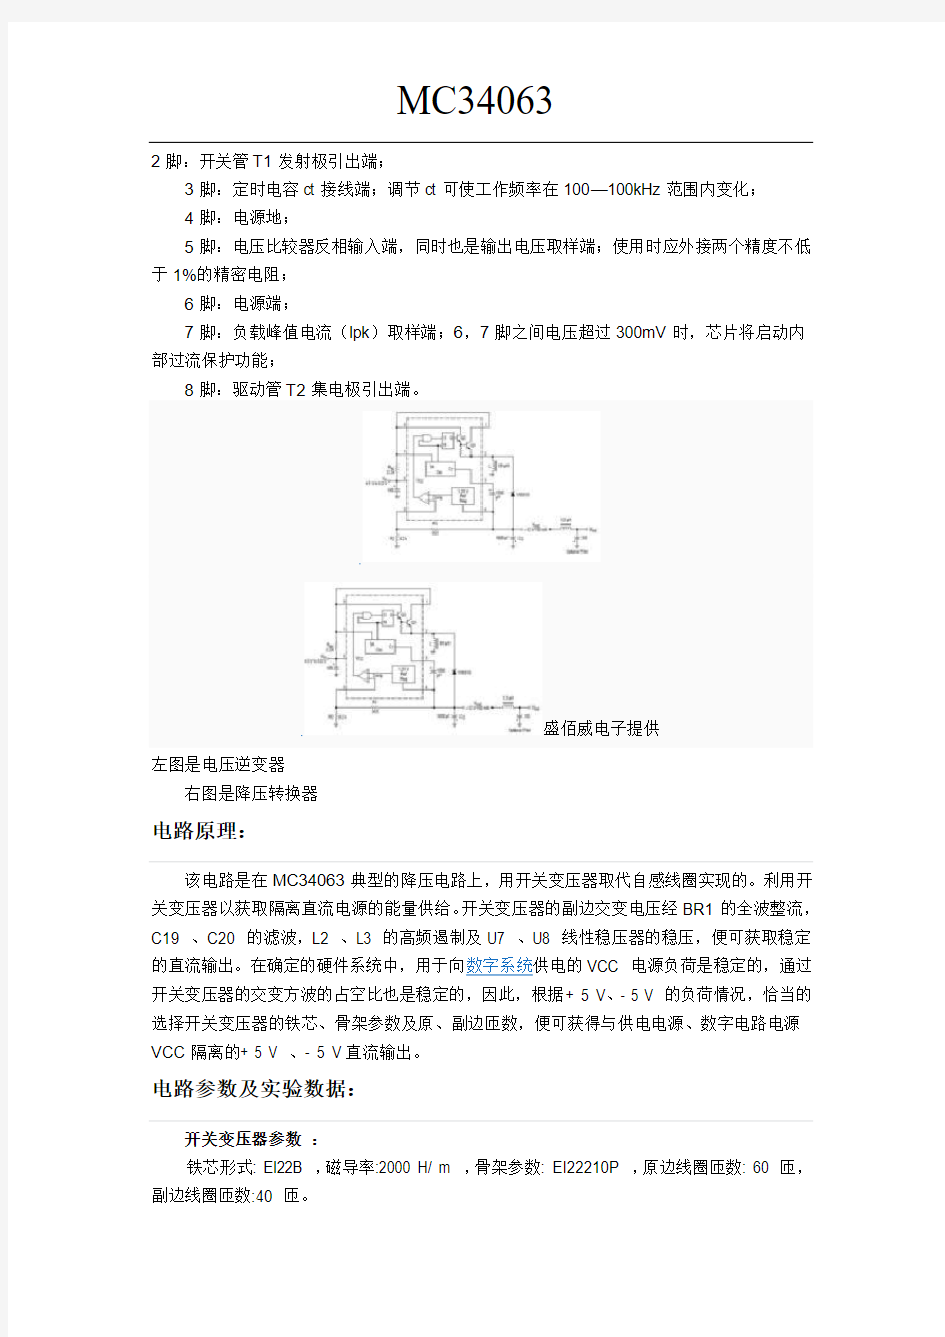 MC34063中文资料以及最新典型运用